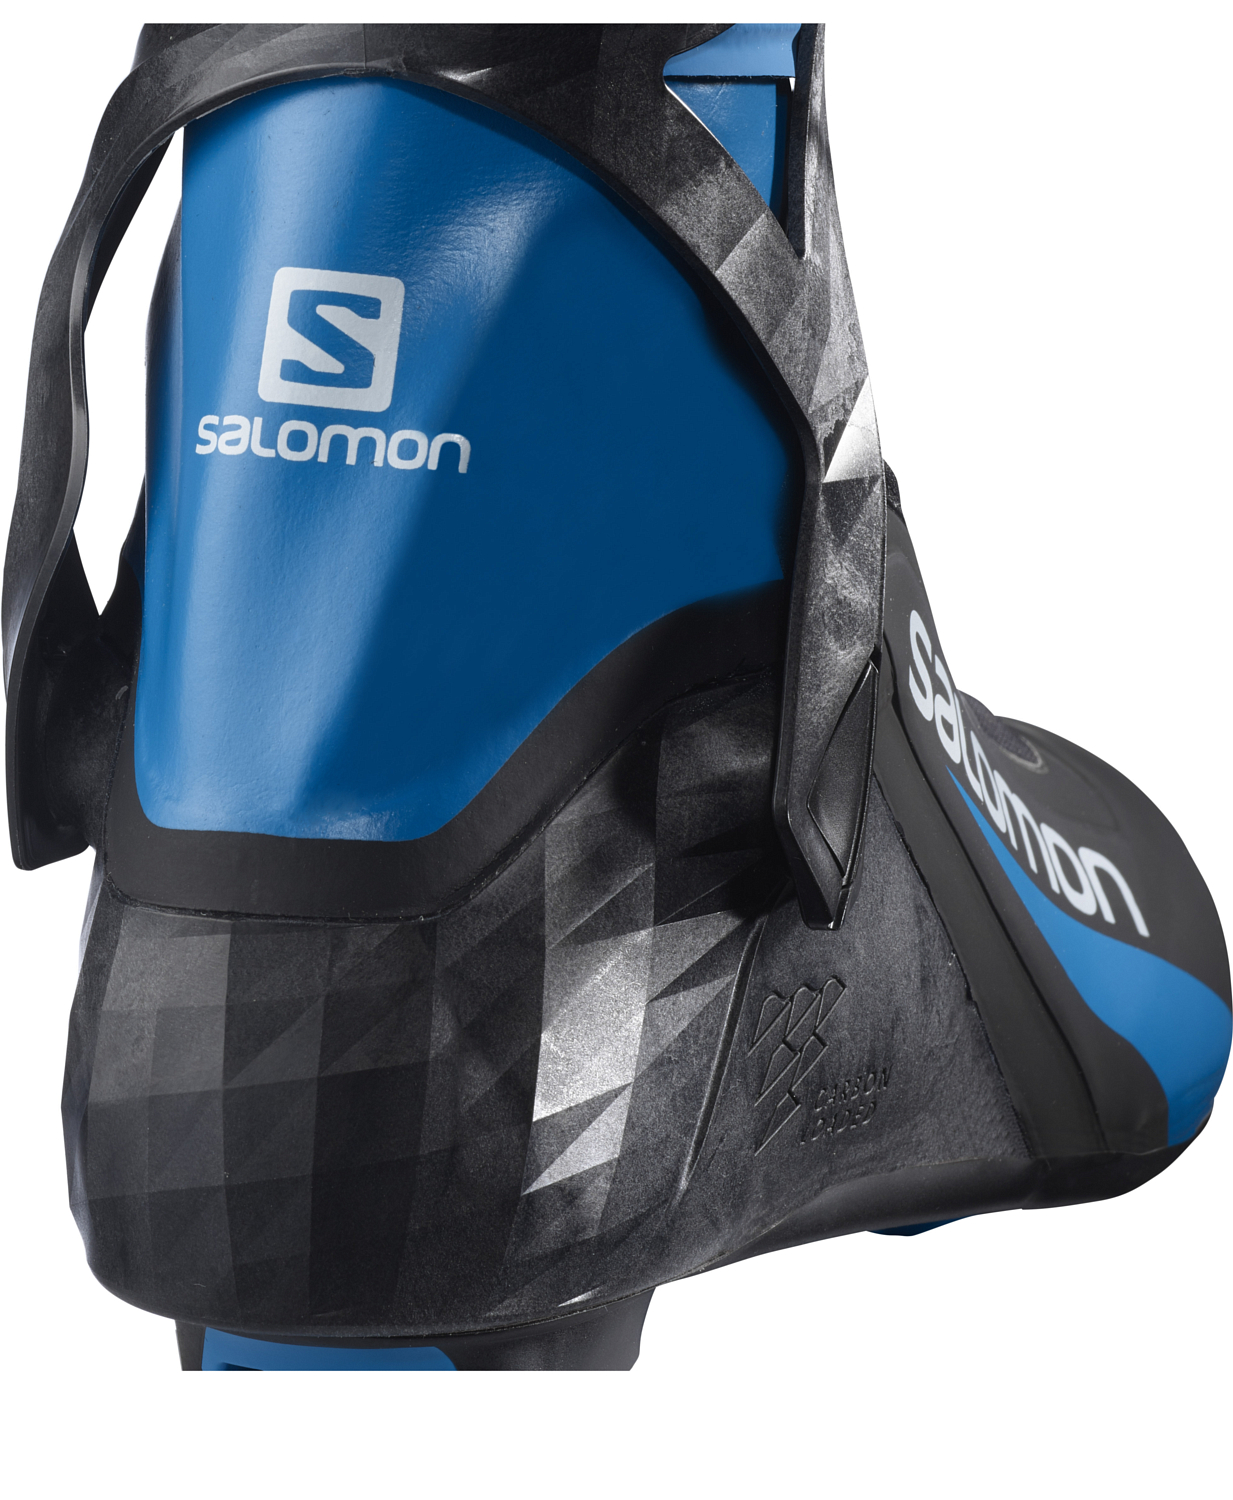 Лыжные ботинки SALOMON 2021-22 S/Race Carbon Skate Pilot